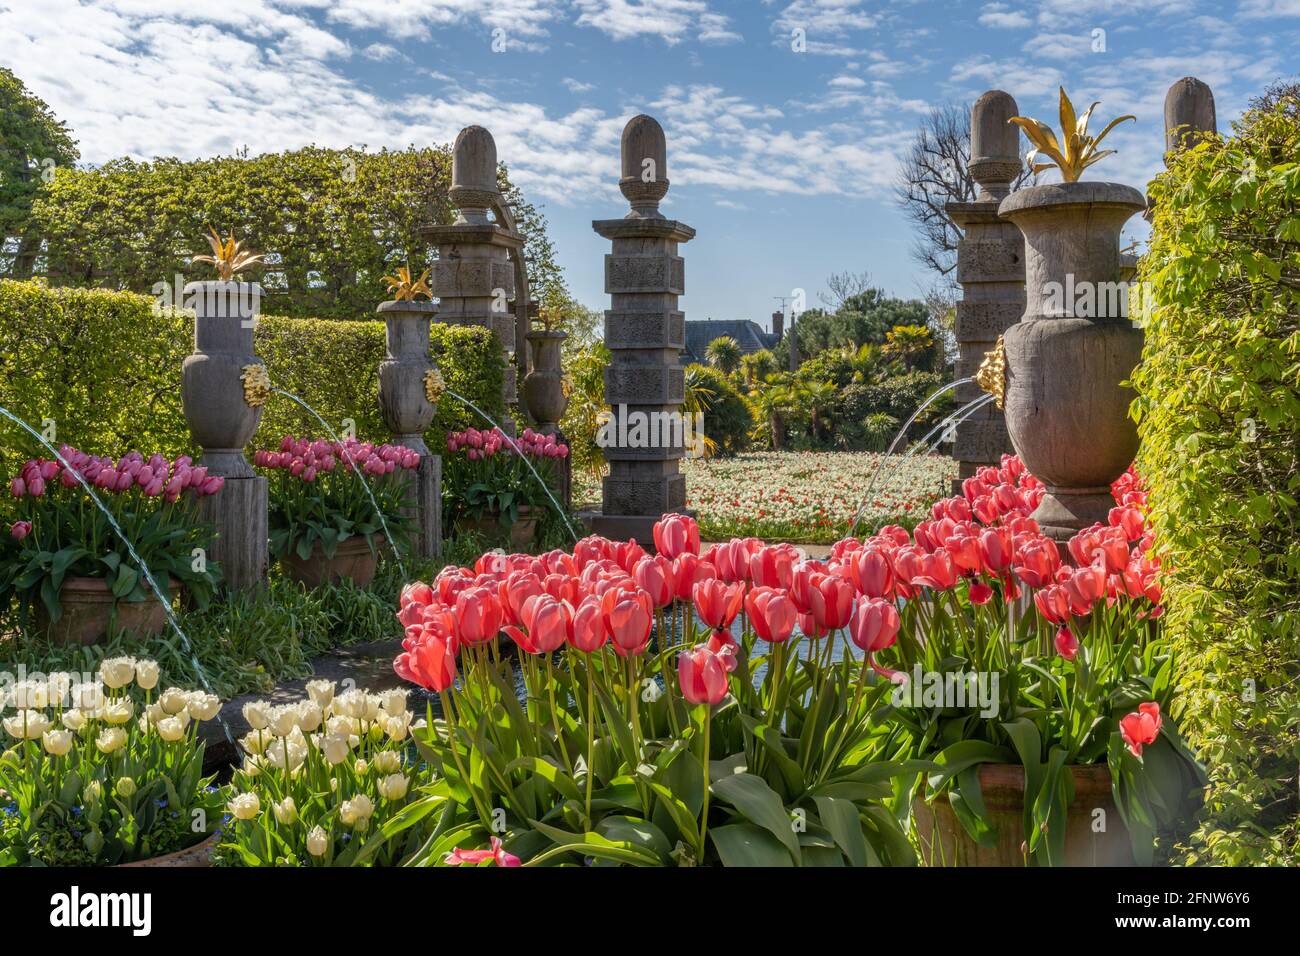 Une fois par an autour du mois de mai, le château d'Arundel, dans le West Sussex, accueille le festival de la tulipe où vous pouvez voir environ 60,000 tulipes dans les magnifiques jardins. Banque D'Images